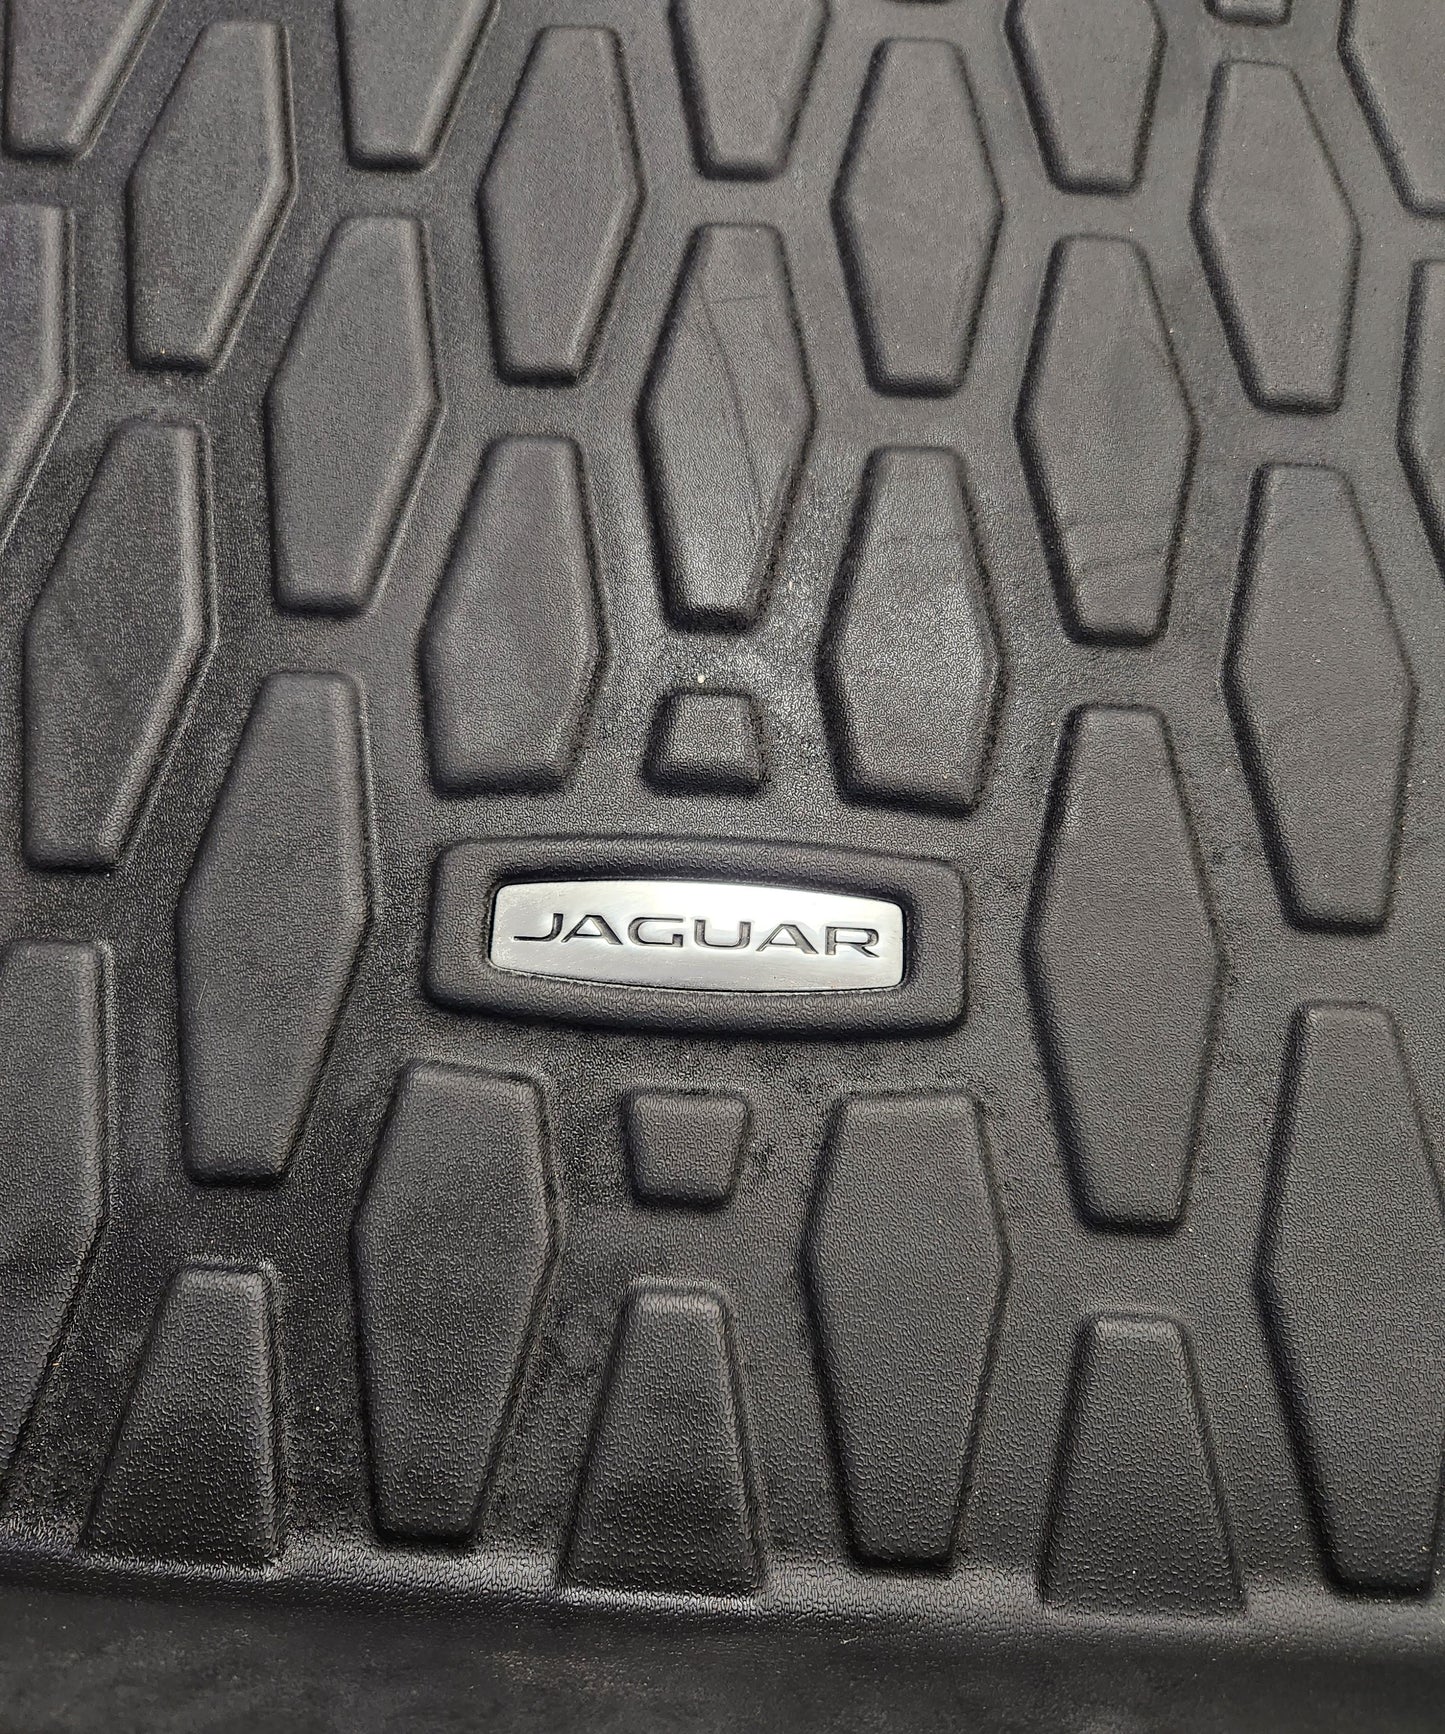 Jaguar XE Boot Liner Caricamento Coperchio Spazio T4N7501